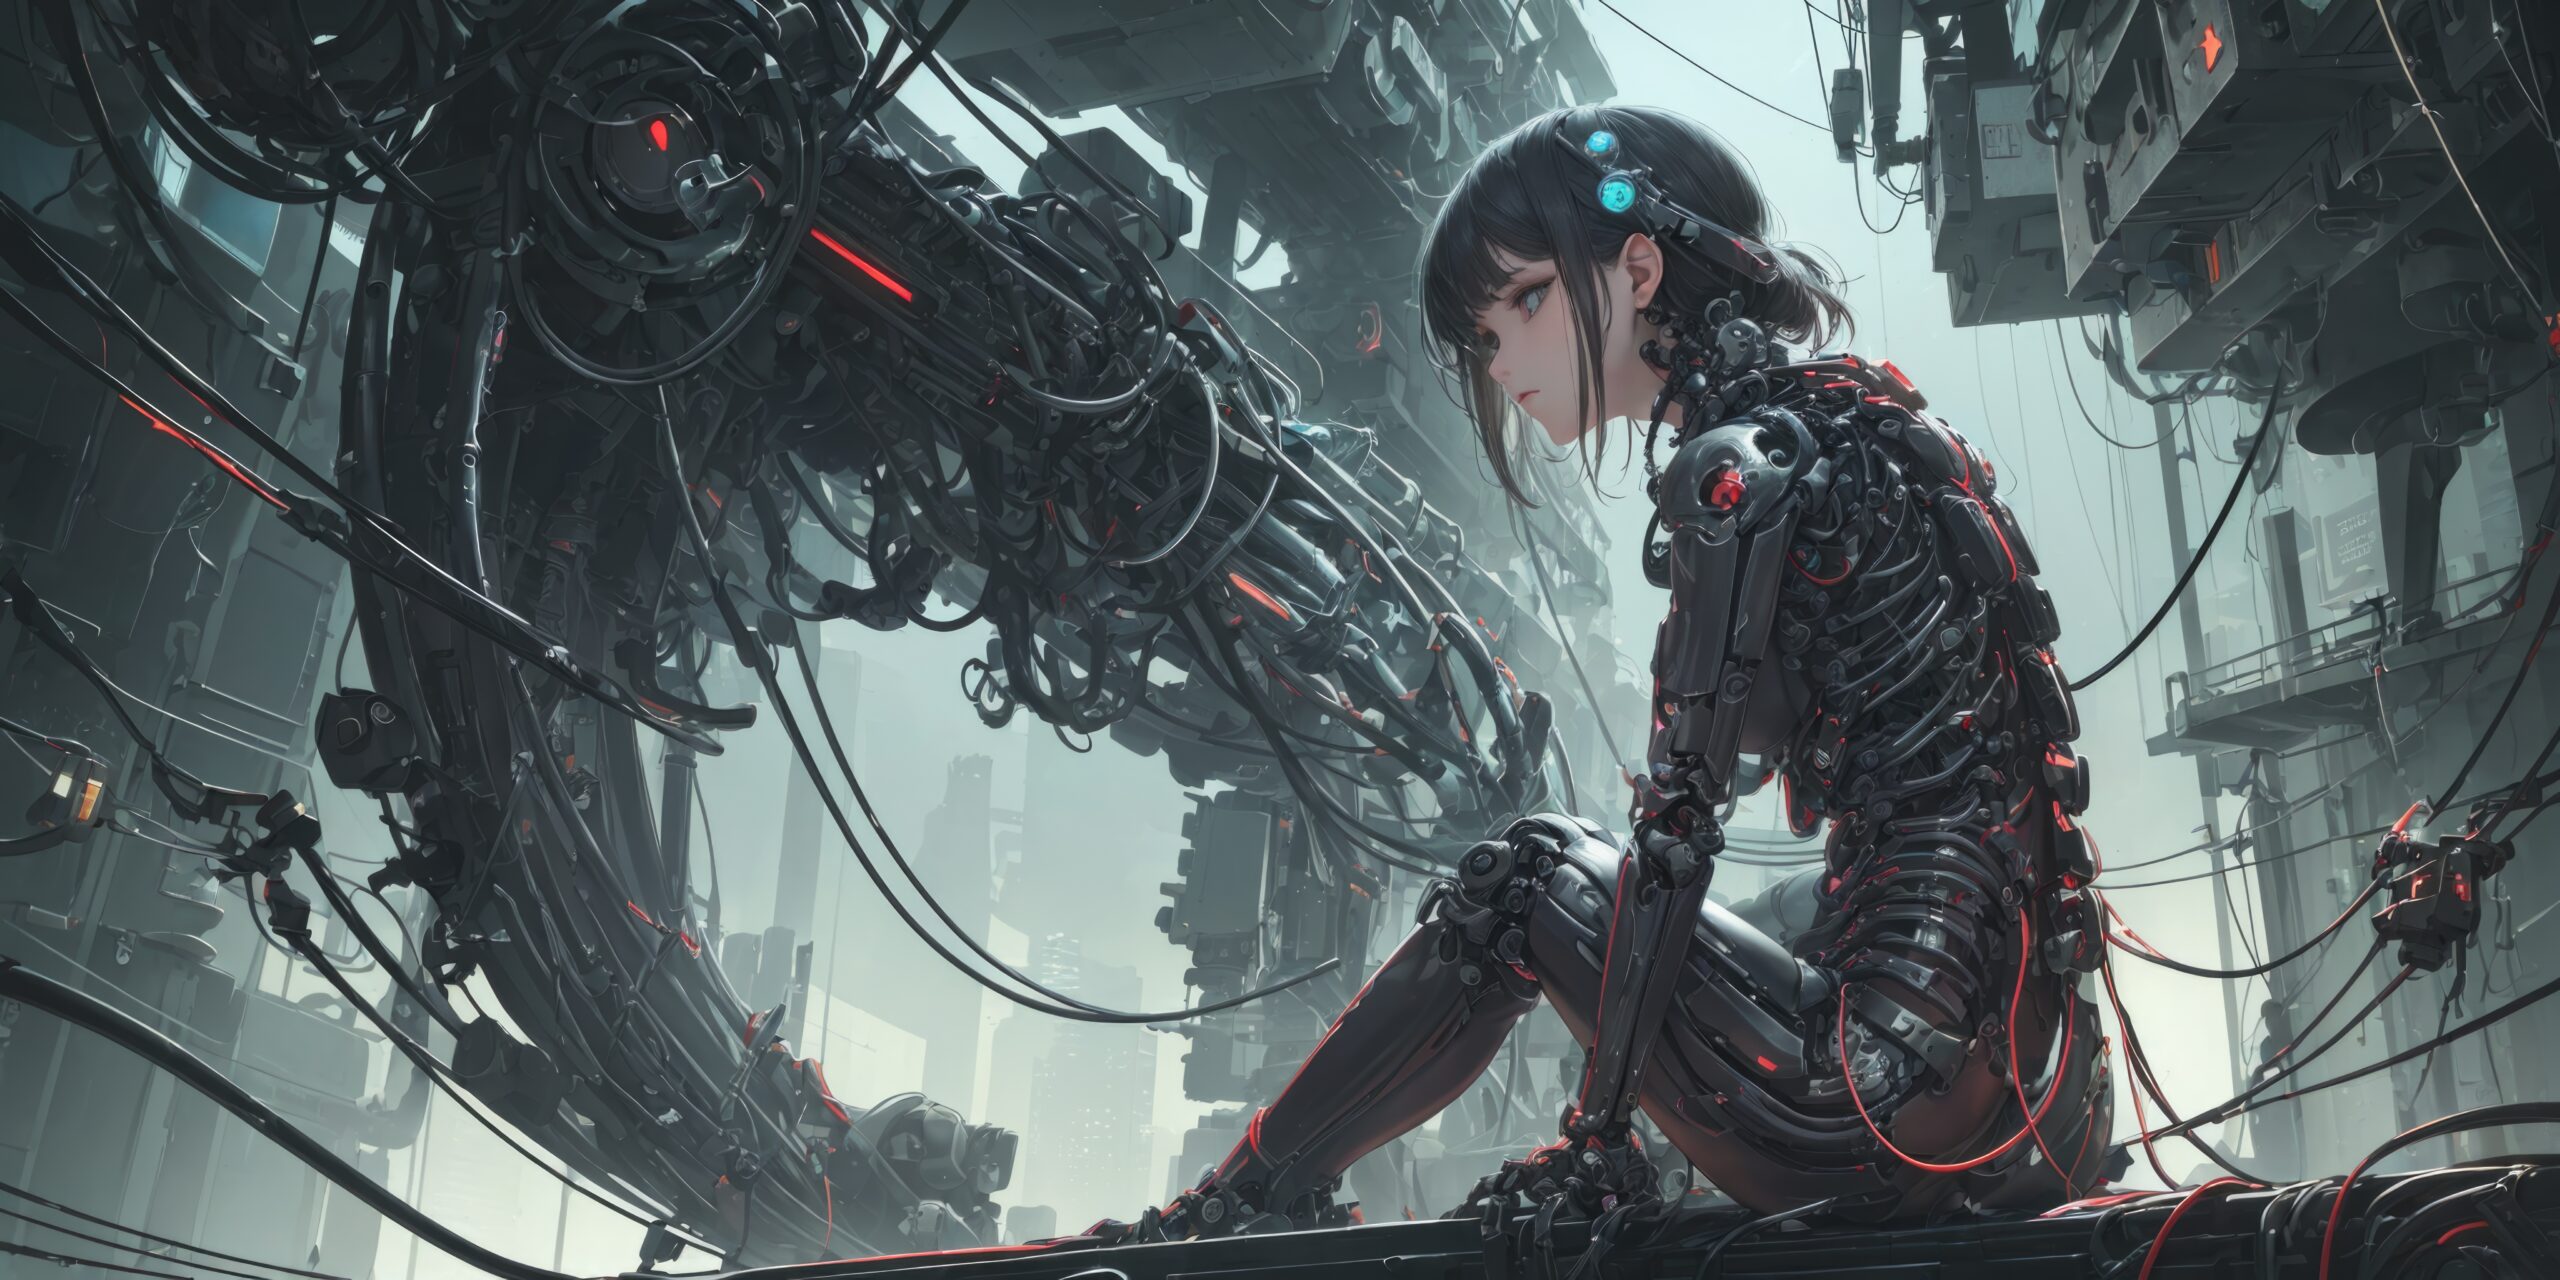 Birth of a Cyberpunk Cyborg: Anime Girl Creation